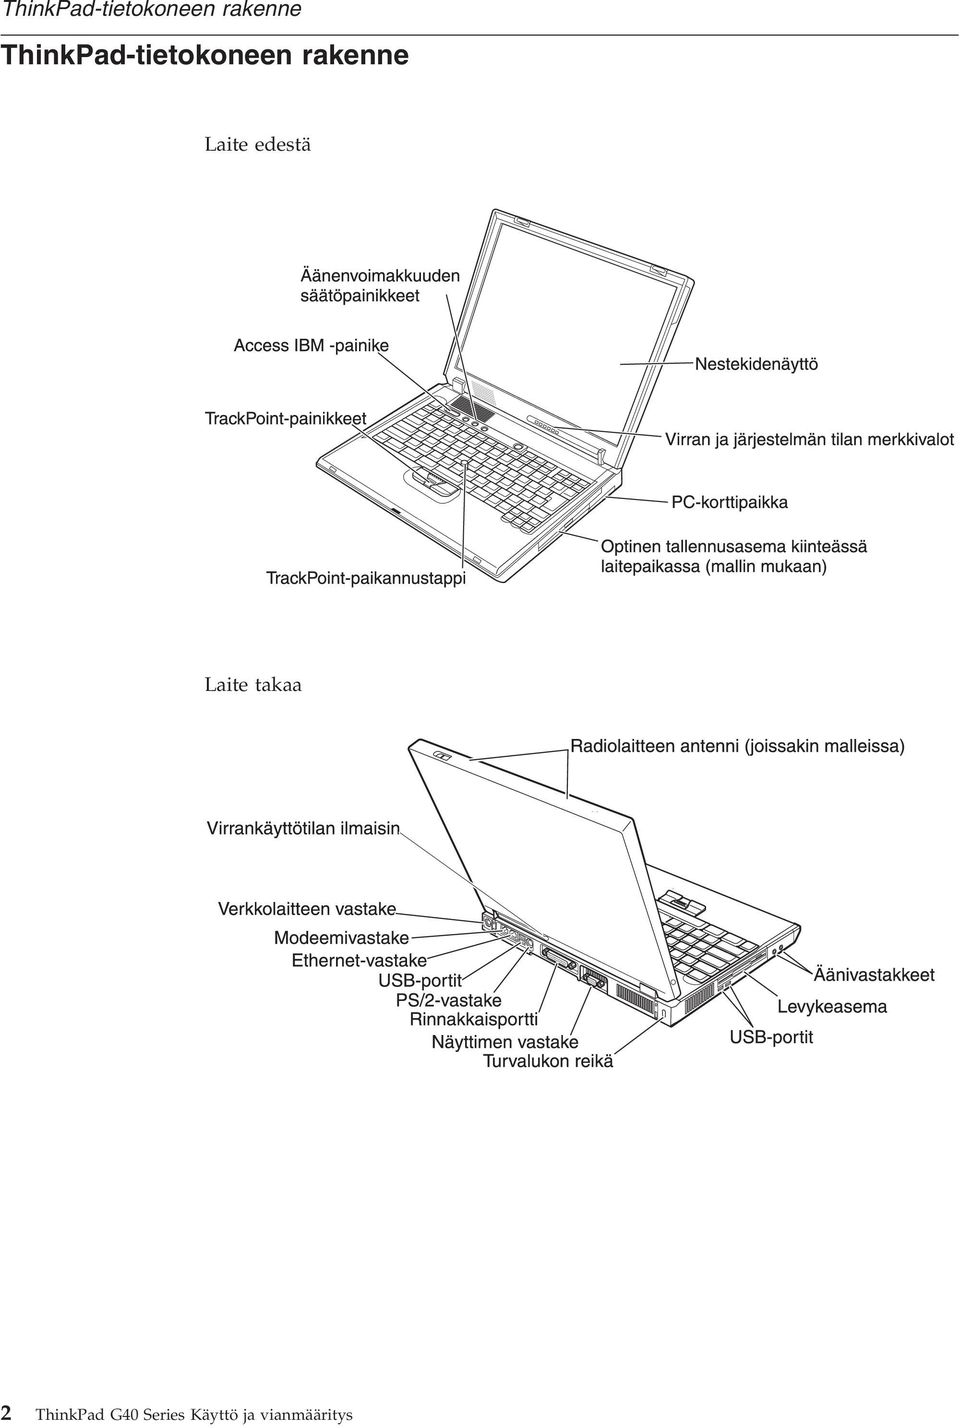 ThinkPad G40 Series Käyttö ja